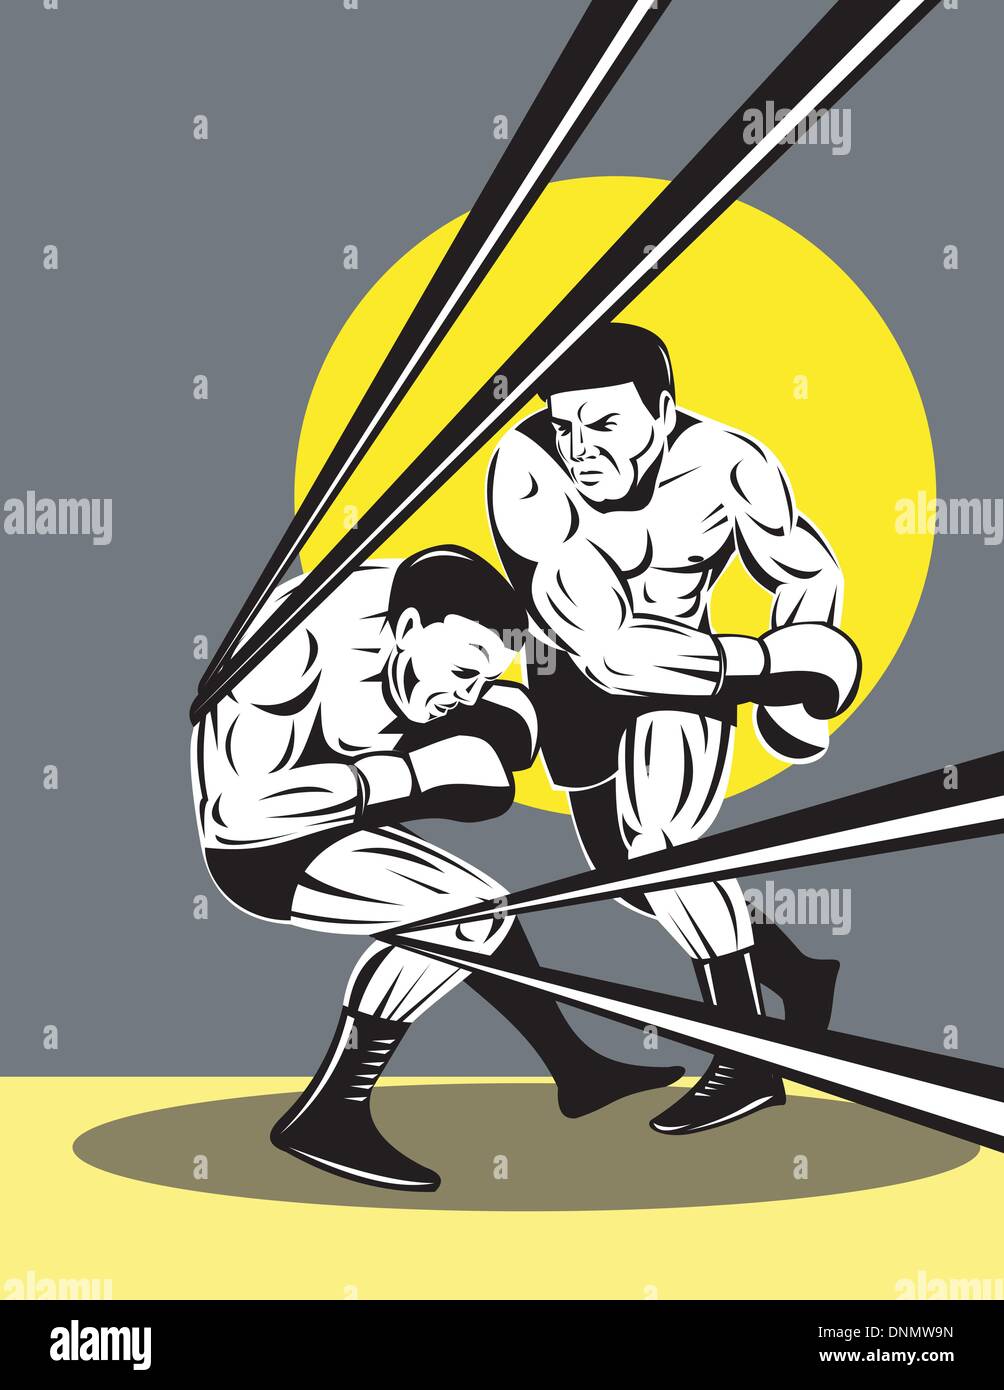 Abbildung eines Boxers verbinden einen KO-Schlag auf Seile Retro-Stil Stock Vektor